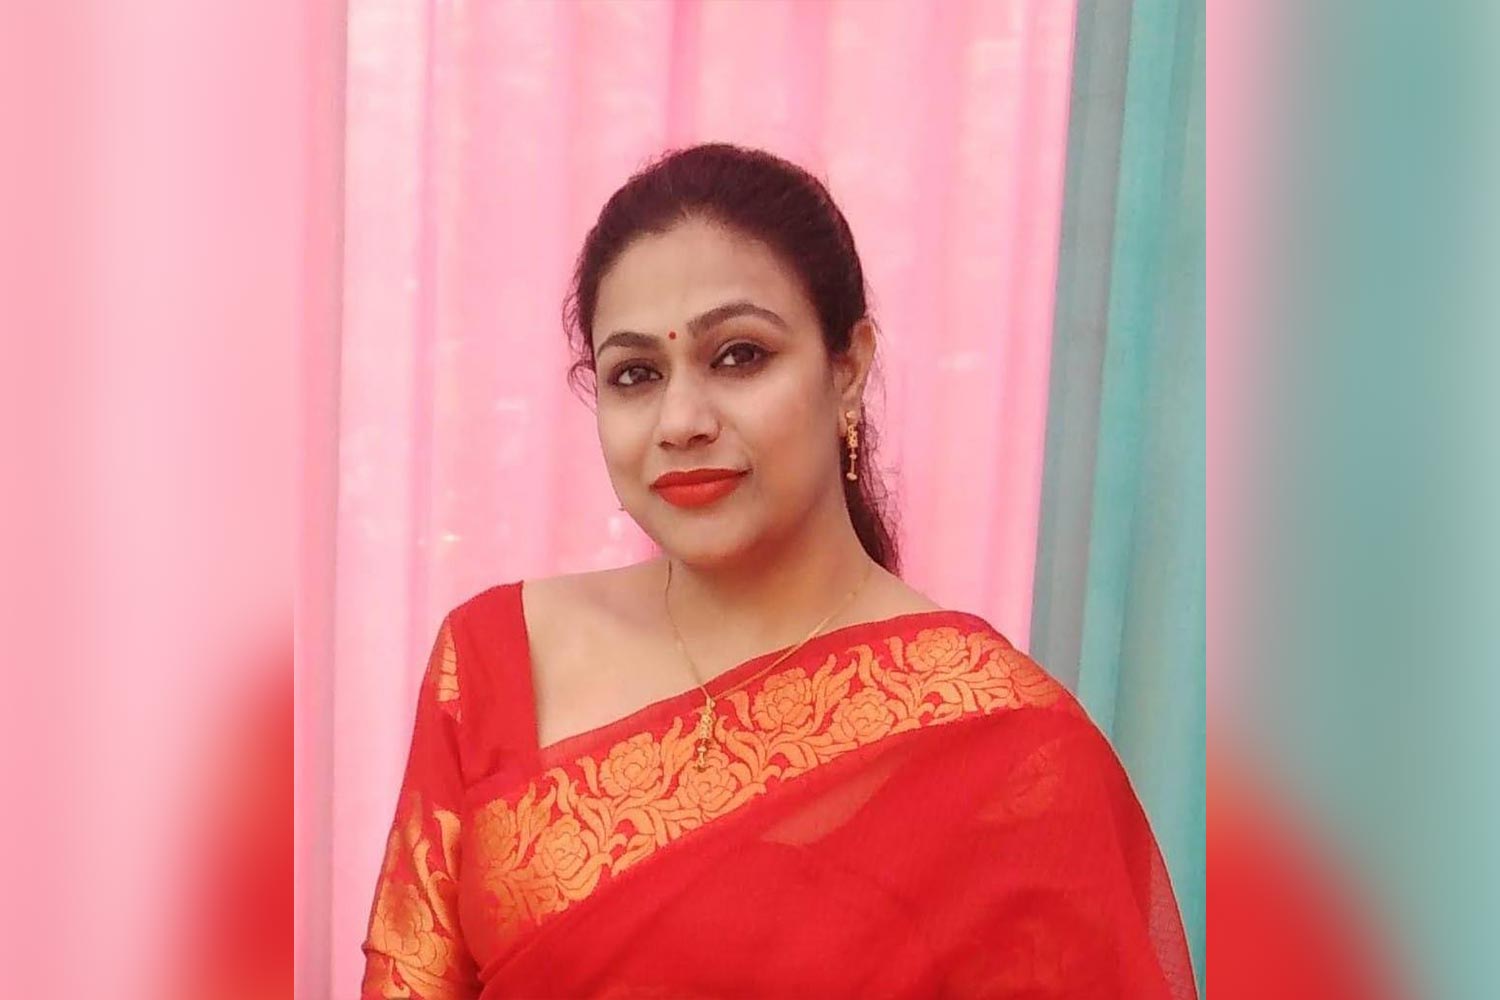 Ms. Neeti Mathur